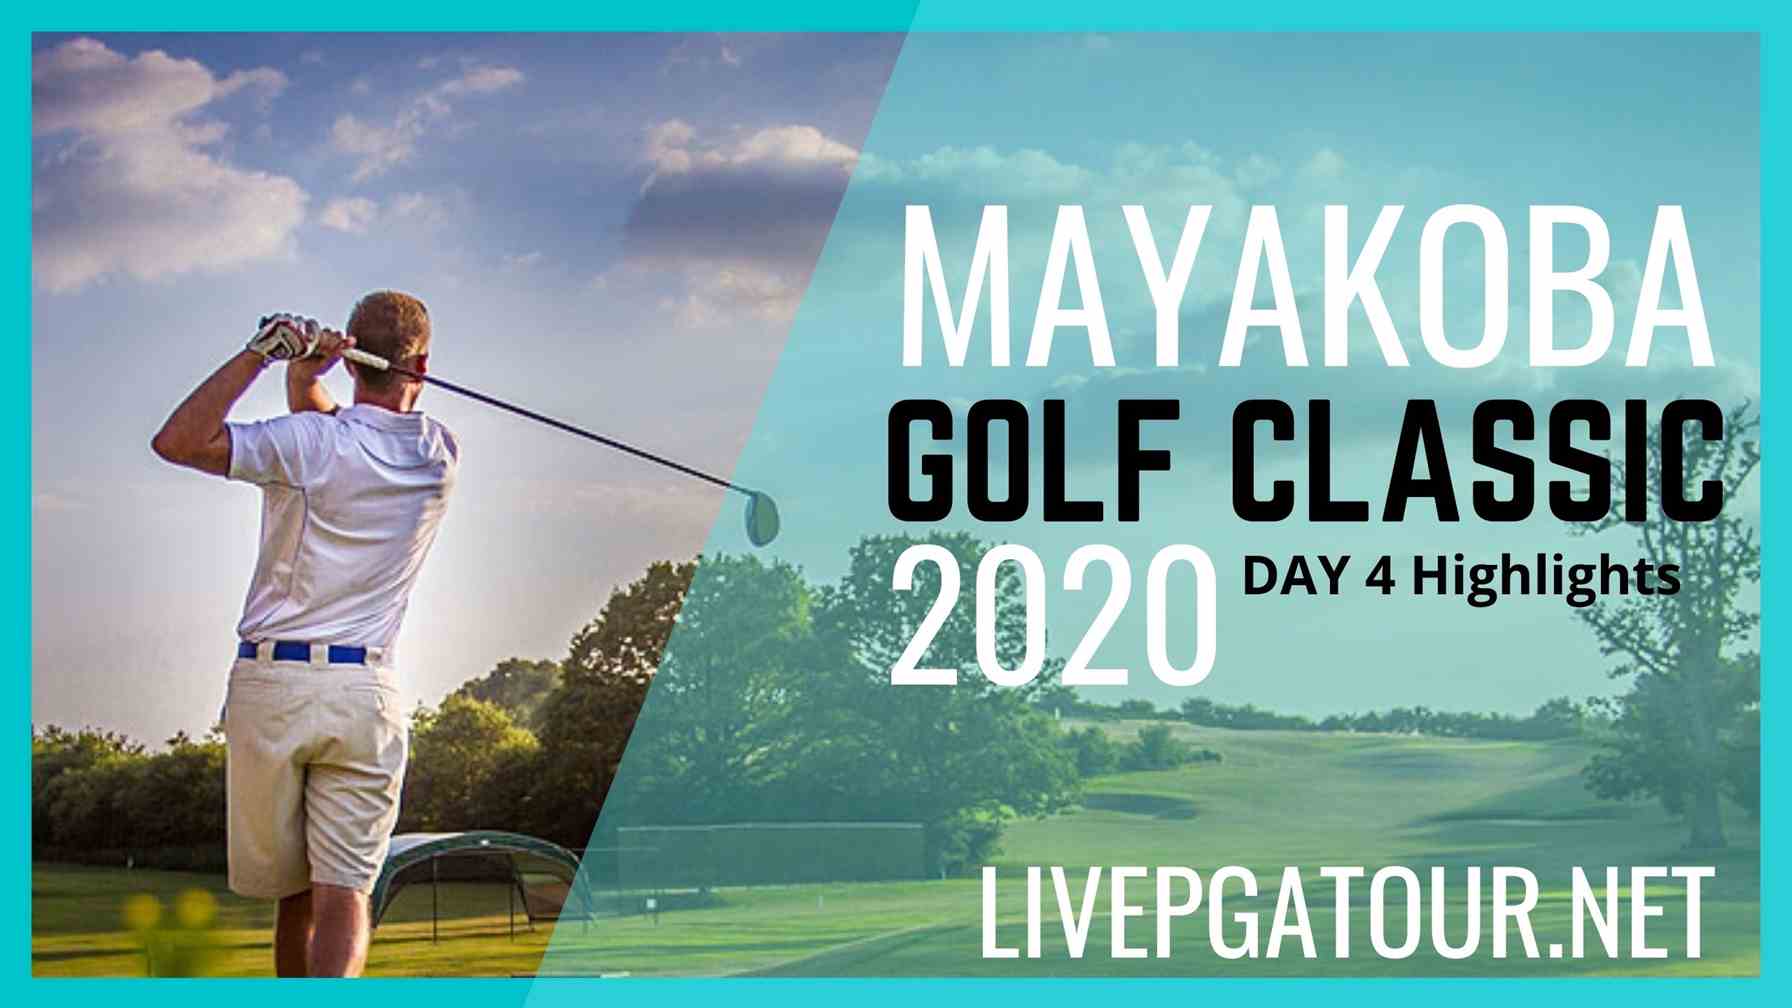 Mayakoba Golf Classic PGA Tour Day 4 Highlights 2020